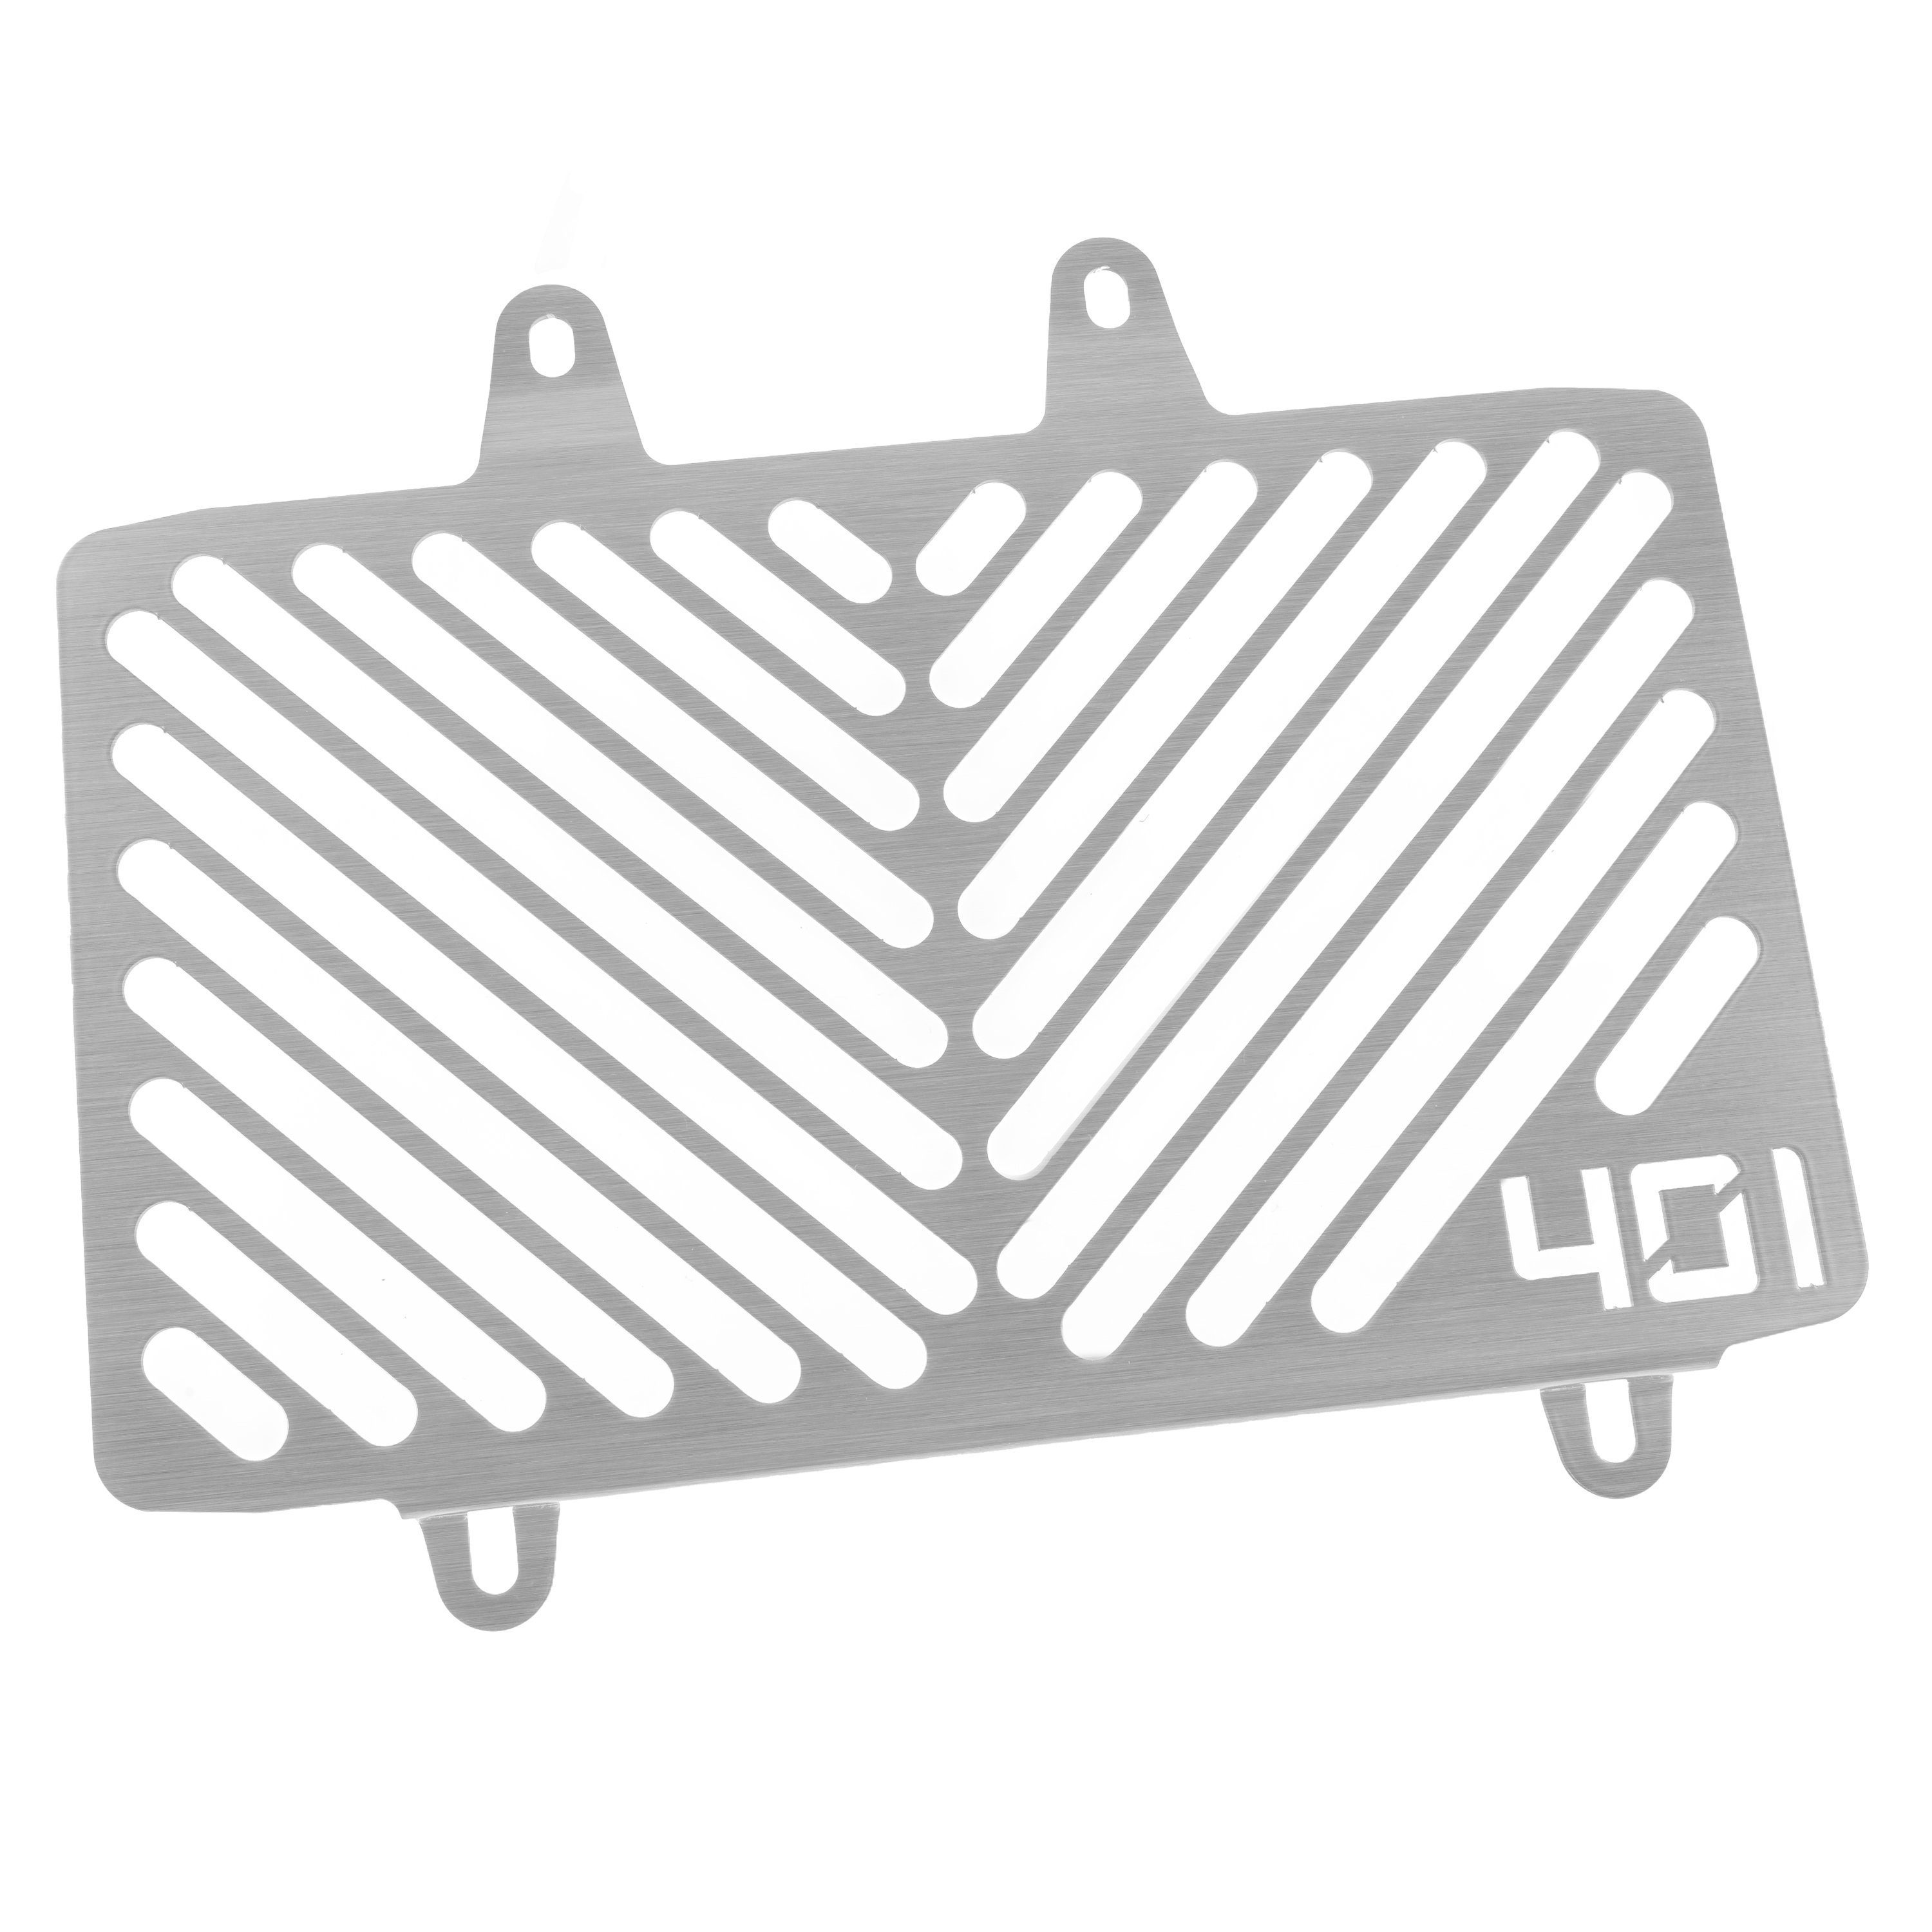 ZIEGER Motorrad-Additiv Kühlerabdeckung kompatibel mit Husqvarna Vitpilen 401 Logo silber, Motorradkühlerabdeckung